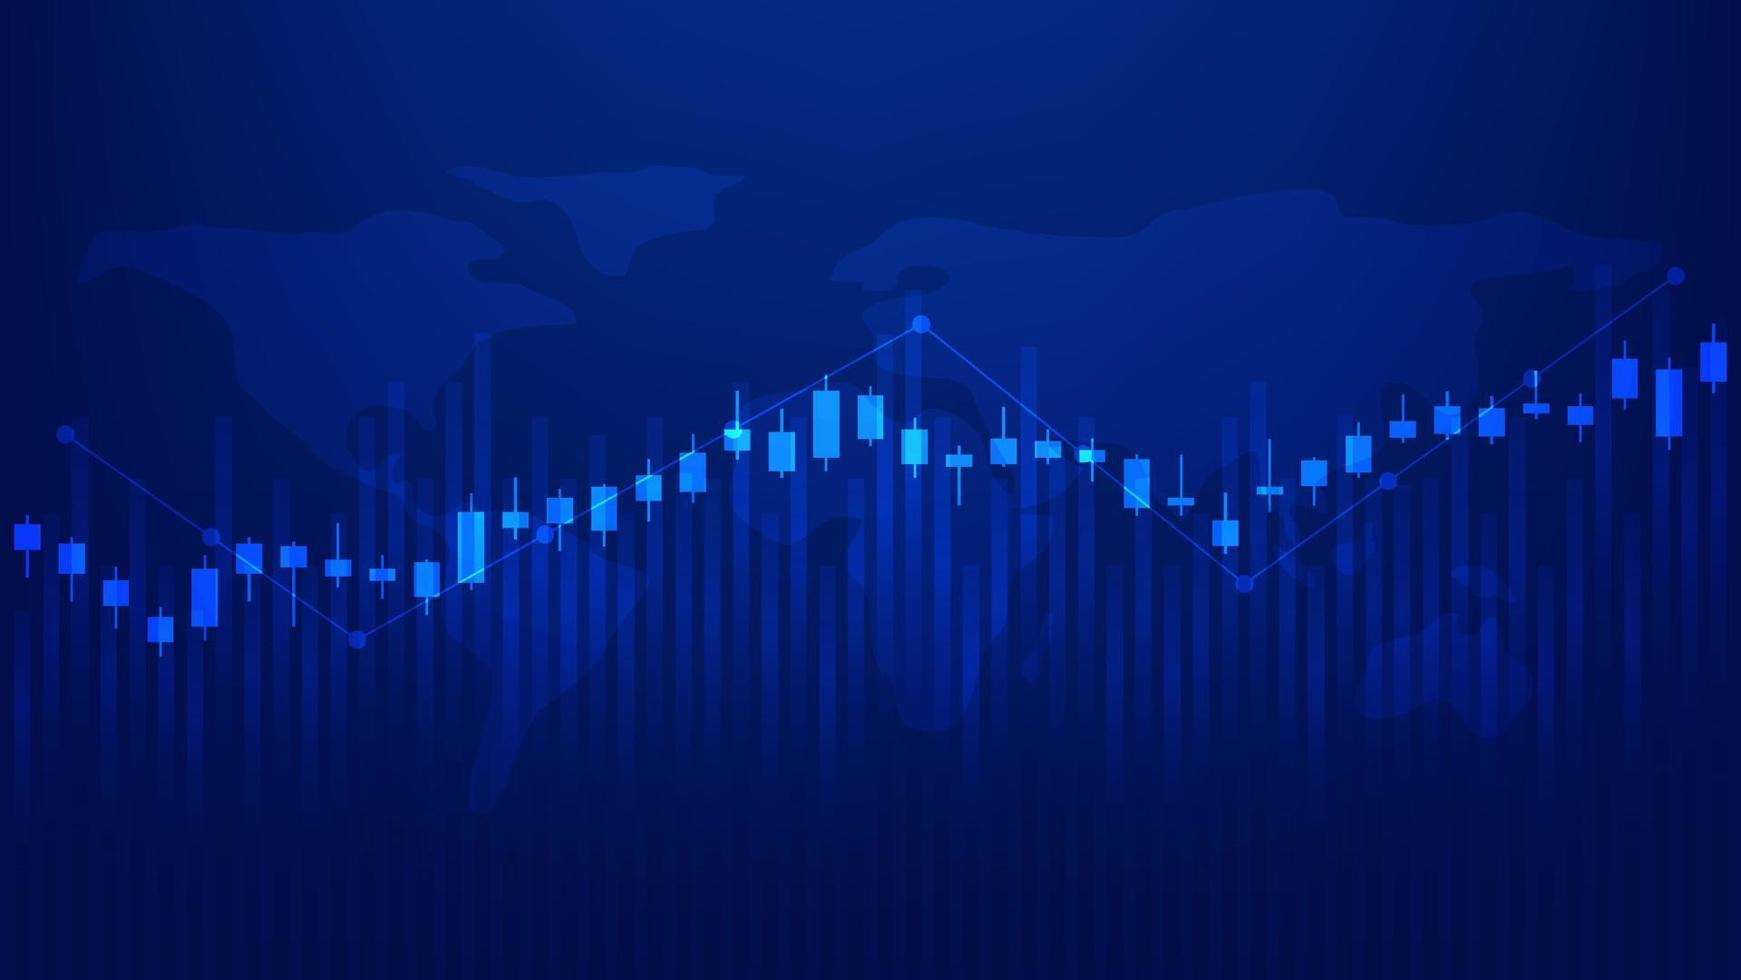 ekonomi och finansiera grafisk begrepp. finansiell företag investering statistik med stock marknadsföra ljusstakar och bar Diagram på blå bakgrund vektor